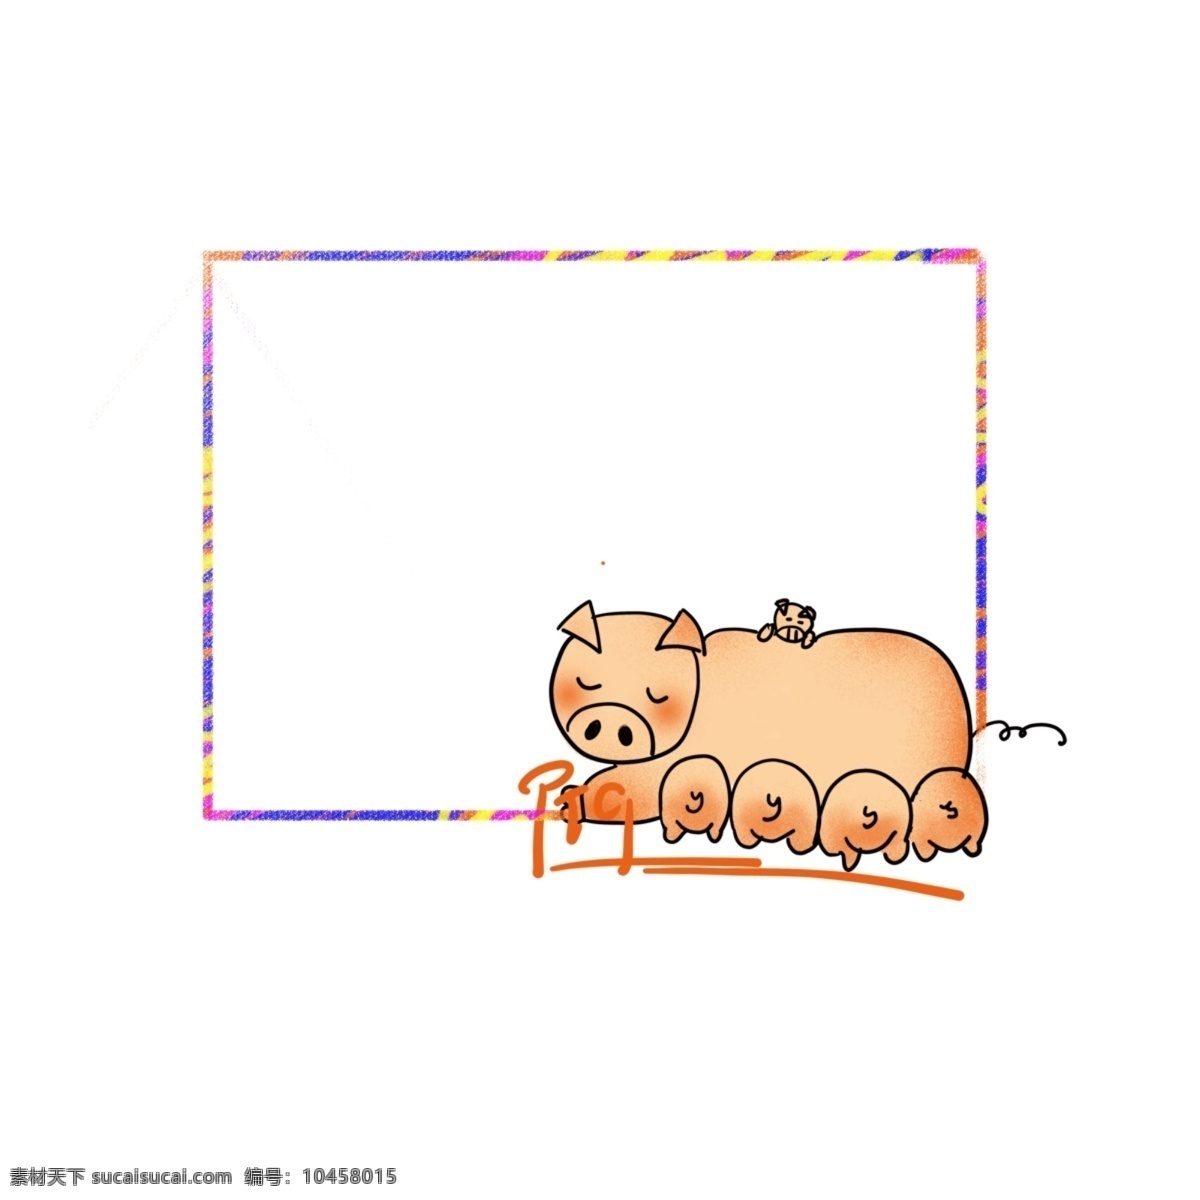 创意 手绘 风 可爱 猪 宝宝 边框 元素 卡通边框 祝福边框 商用边框 滑稽边框 猪宝宝边框